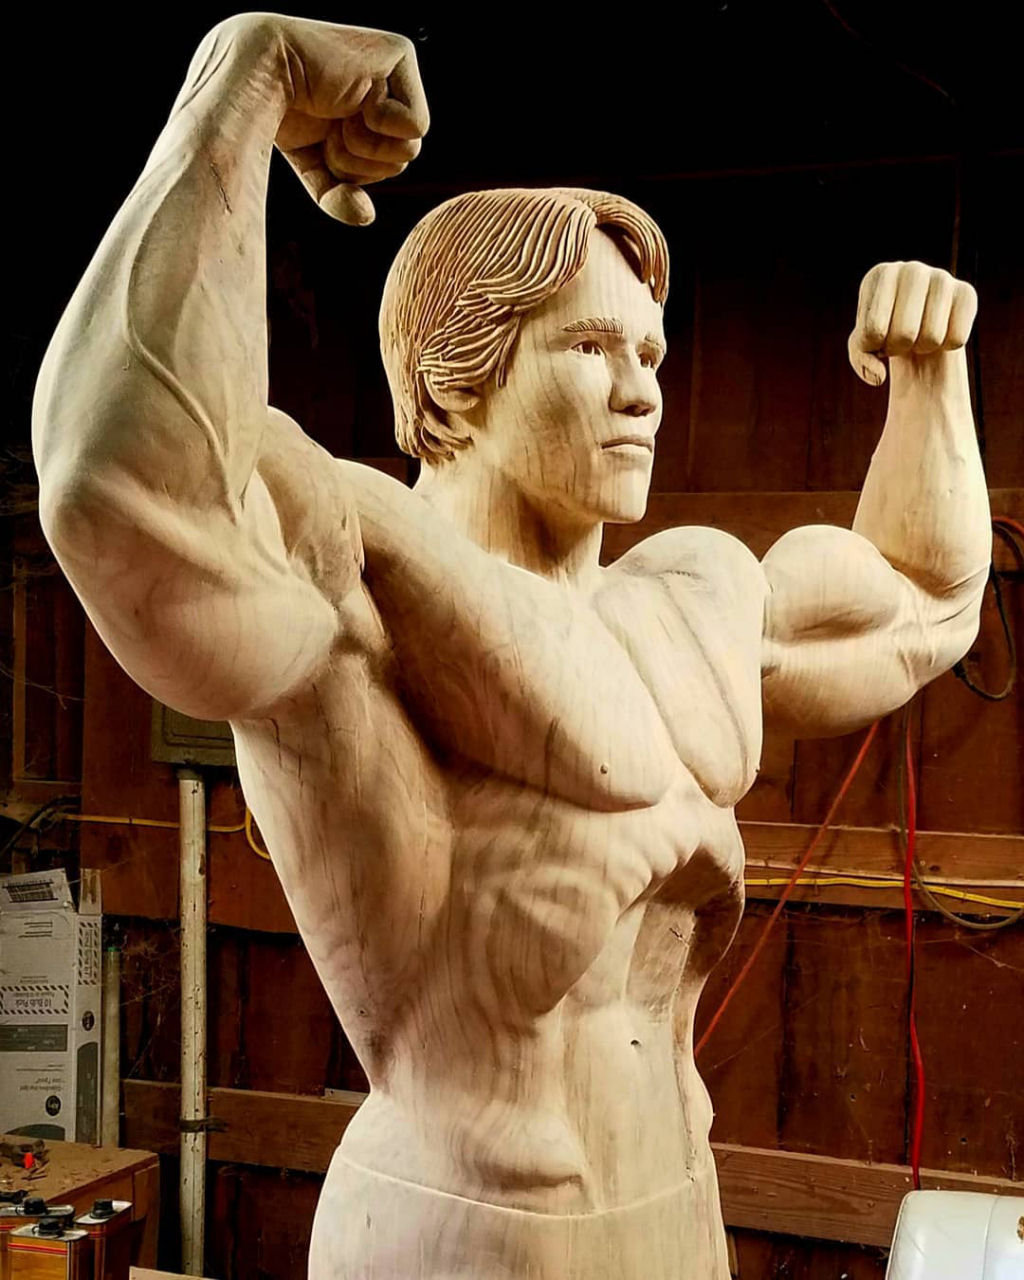 Artista esculpe incrvel escultura em tamanho natural de Schwarzenegger com um nico tronco de rvore 05